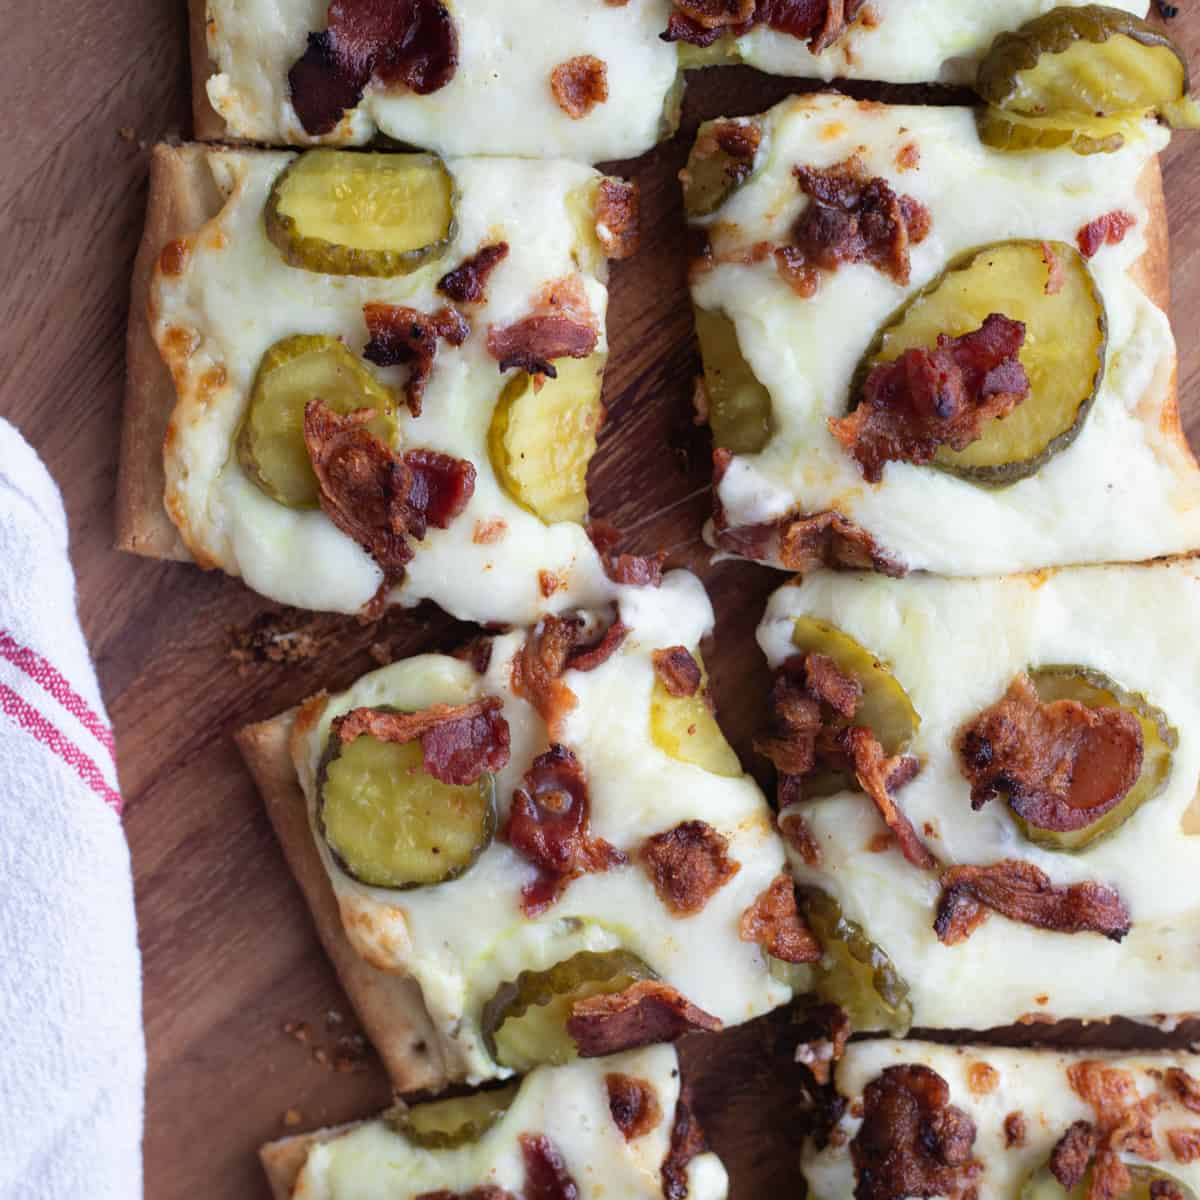 Pickle flatbread pizza cut into square slices.